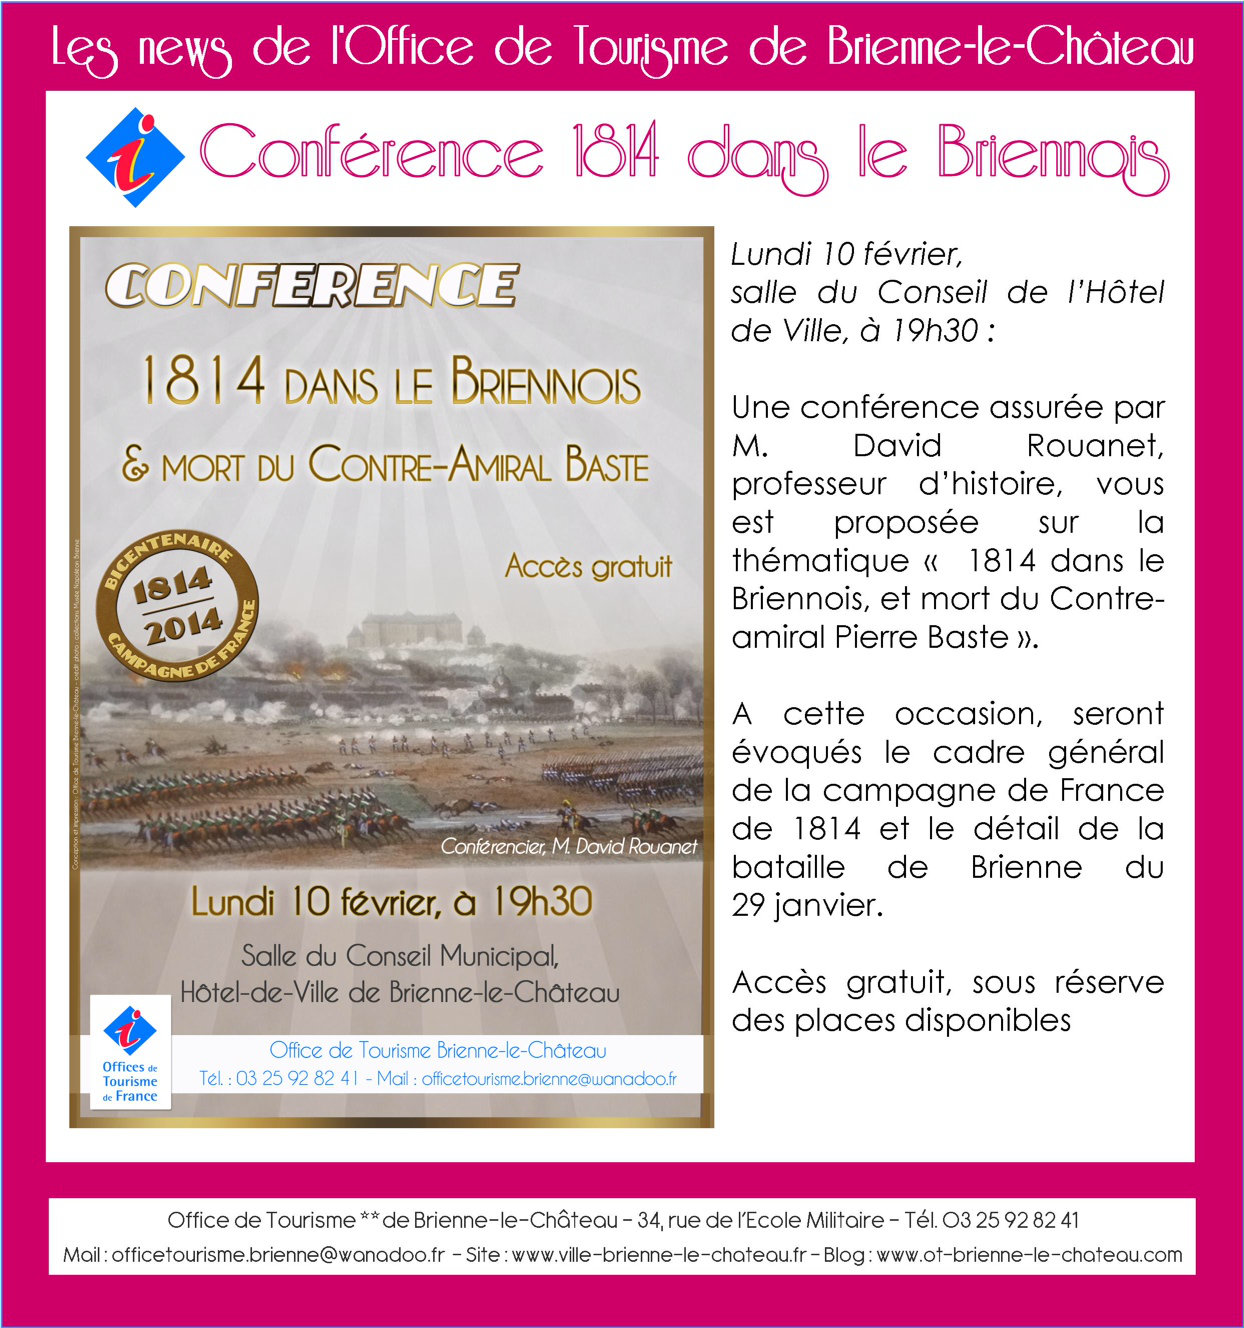 Conference 1814 dans le Briennois, le 10 fevrier 2014 à Brienne U7u6